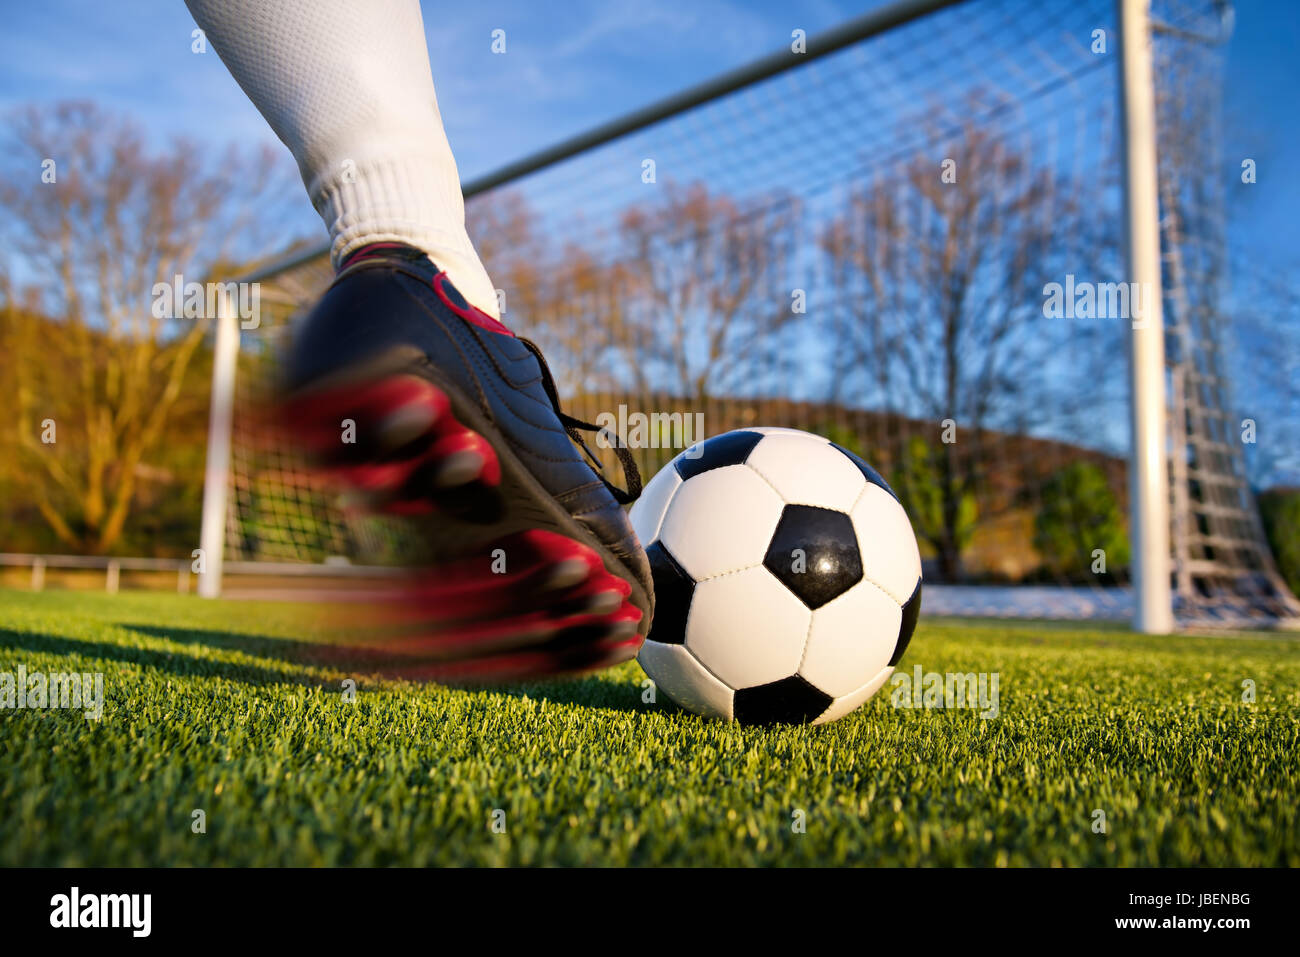 Fußballer kickt den Ball in Richtung Tor, natürlicher Basis Hintergrund Banque D'Images